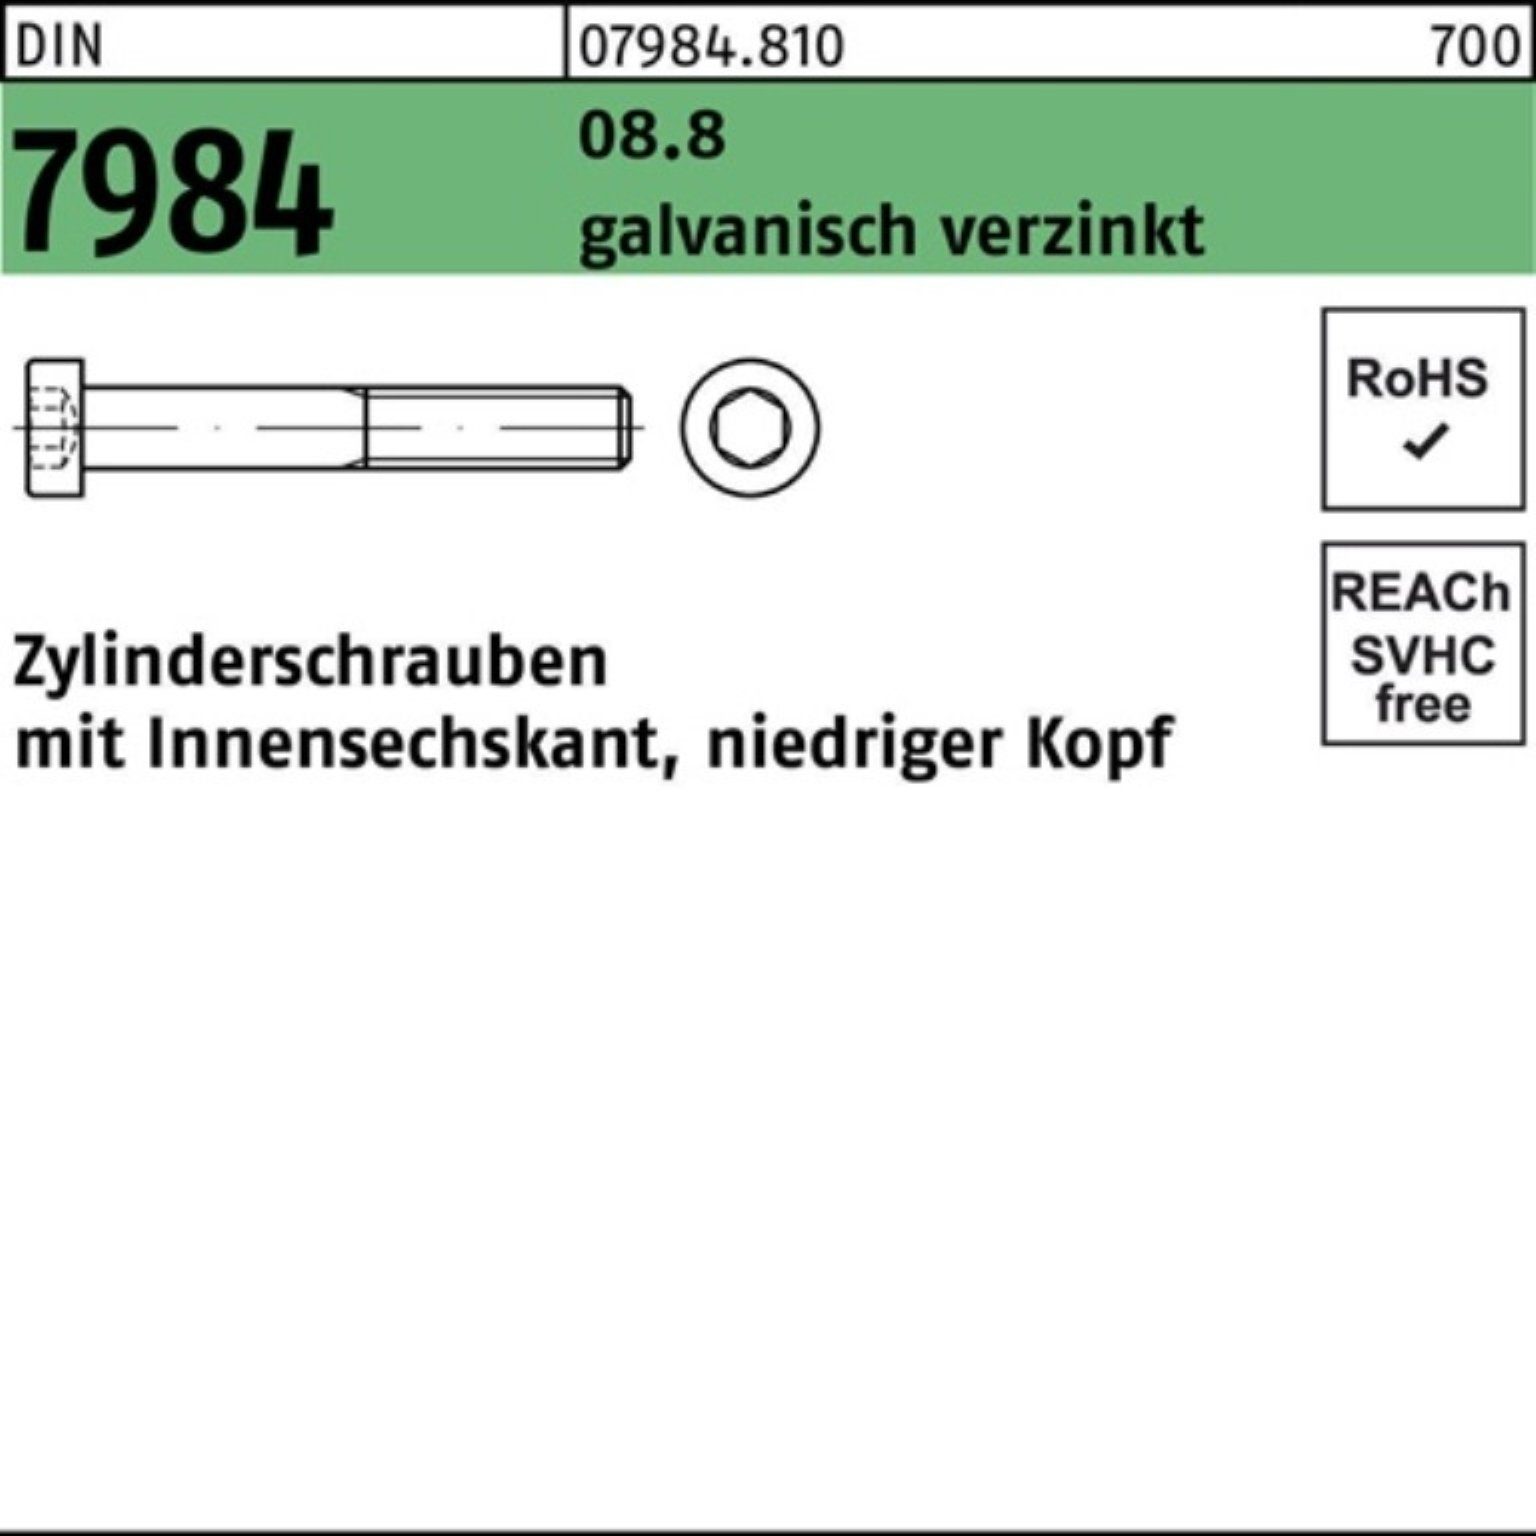 Reyher Zylinderschraube 1 7984 M10x90 100er Pack Innen-6kt galv.verz. DIN 8.8 Zylinderschraube